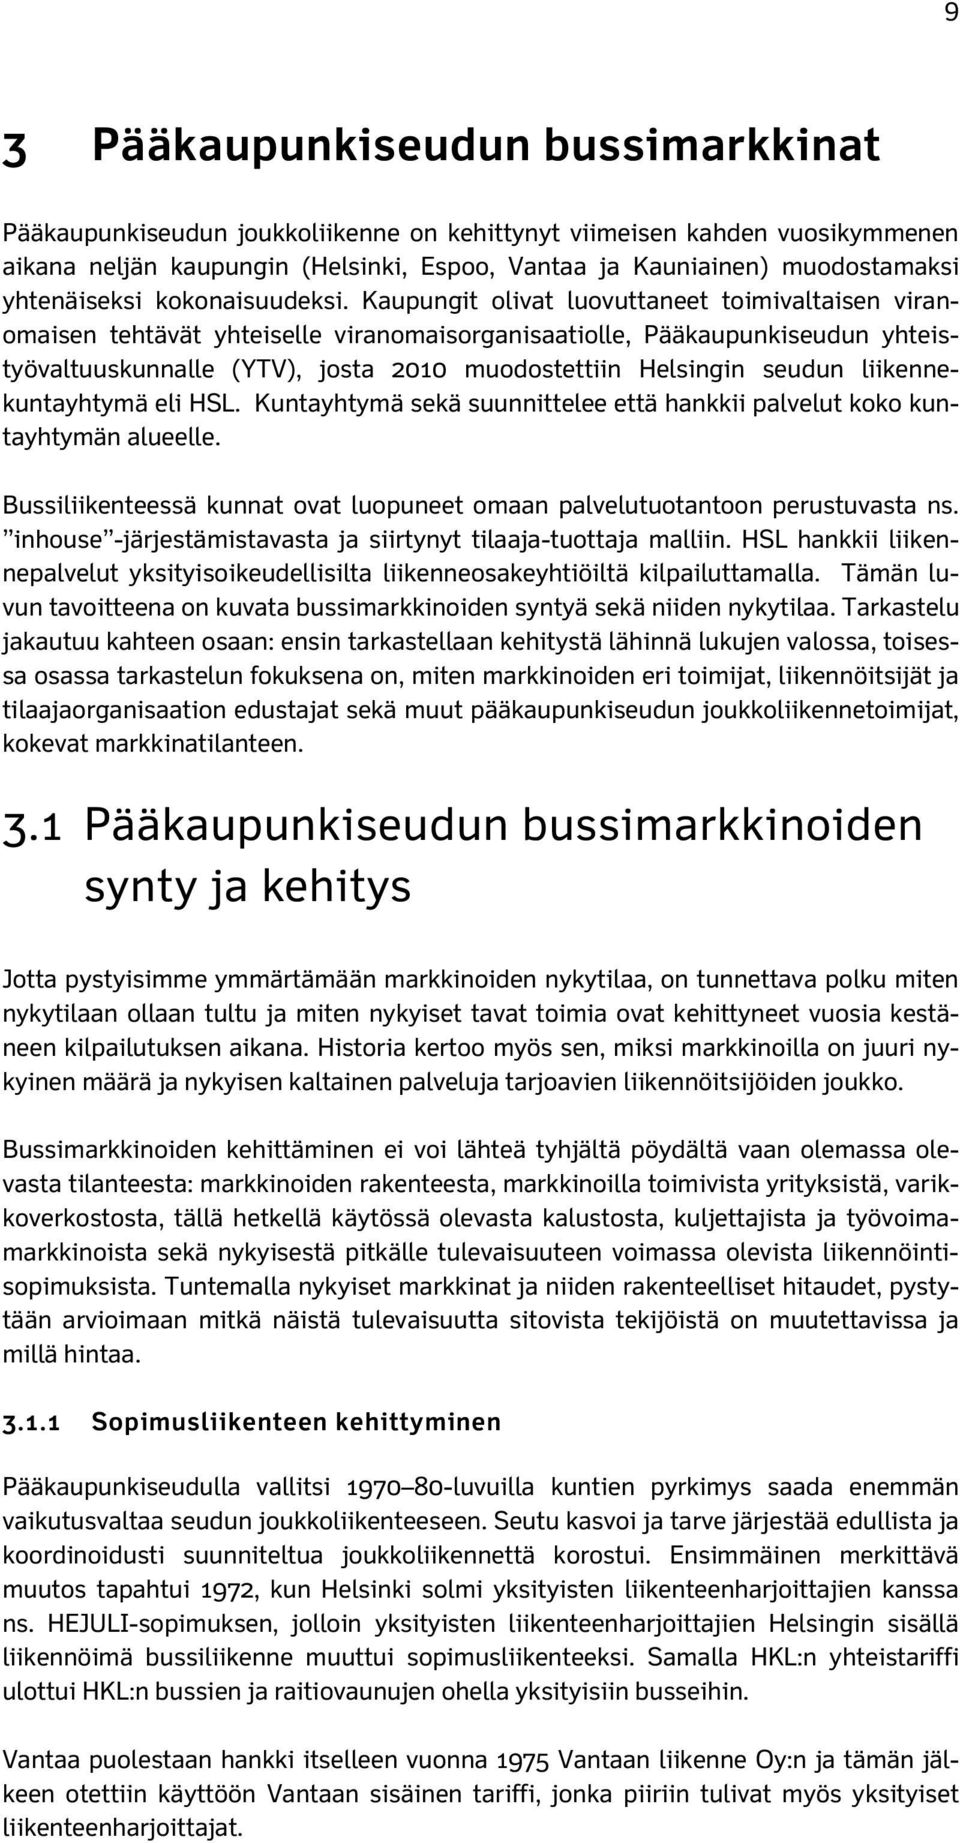 Kaupungit olivat luovuttaneet toimivaltaisen viranomaisen tehtävät yhteiselle viranomaisorganisaatiolle, Pääkaupunkiseudun yhteistyövaltuuskunnalle (YTV), josta 2010 muodostettiin Helsingin seudun